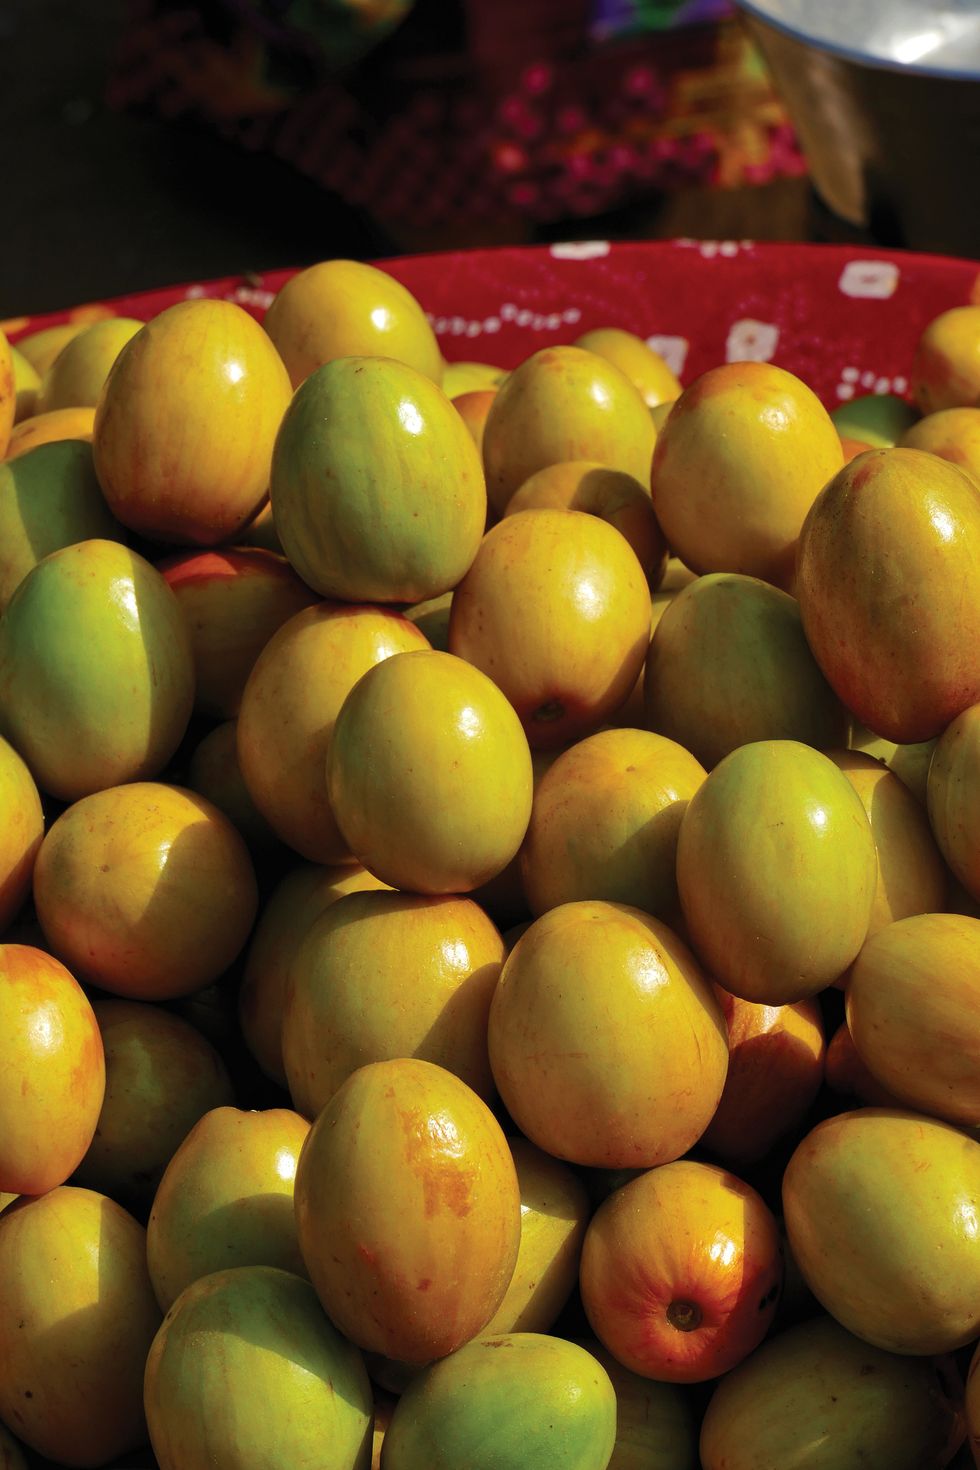 棗子熱量低、維生素c是蘋果的20倍！營養師親授挑選方法，選台灣土棗營養價值最高